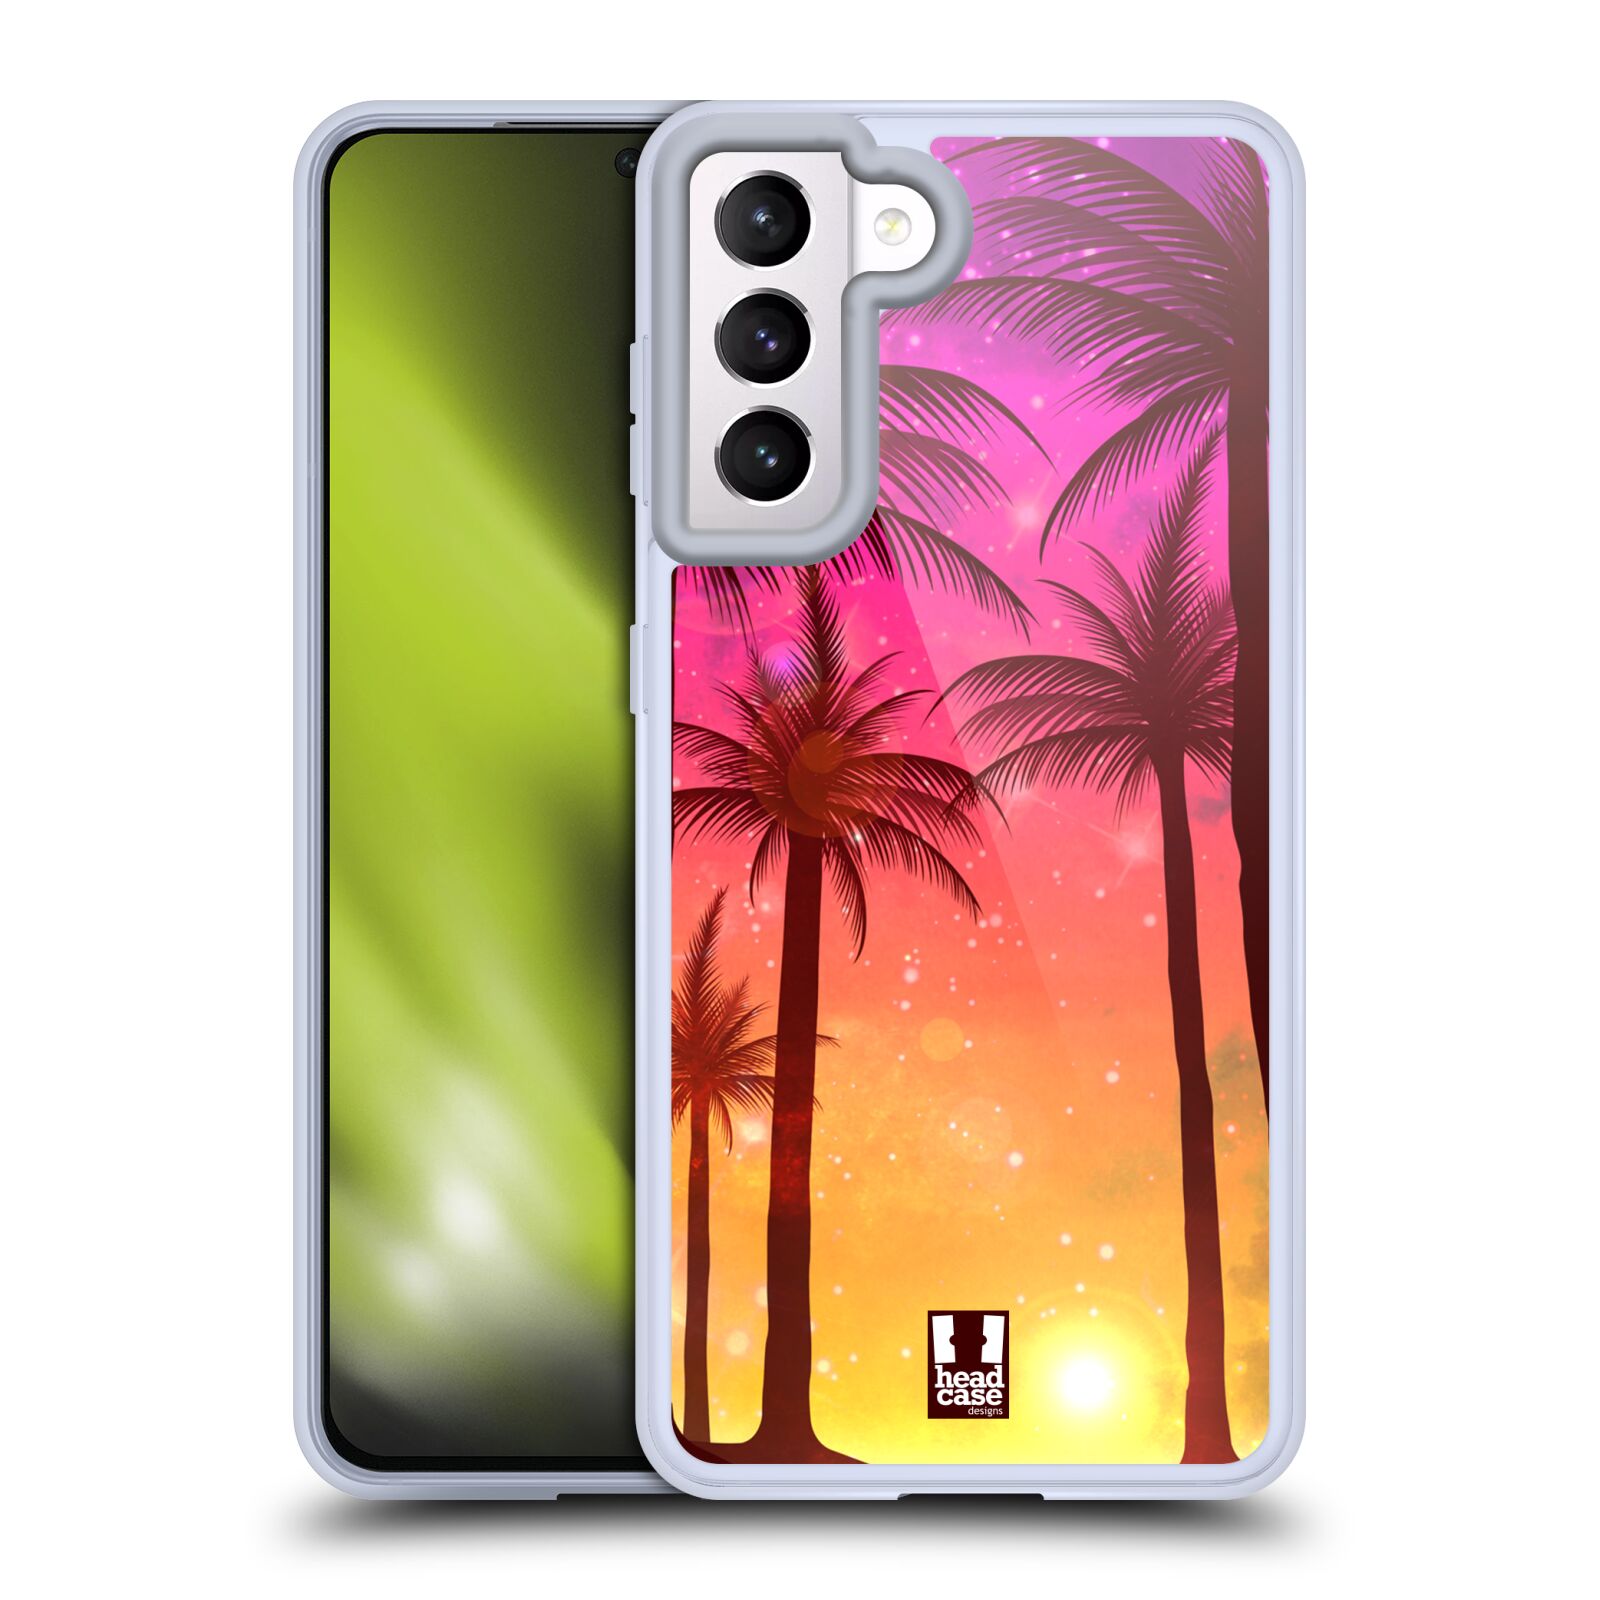 Plastový obal HEAD CASE na mobil Samsung Galaxy S21 5G vzor Kreslený motiv silueta moře a palmy RŮŽOVÁ